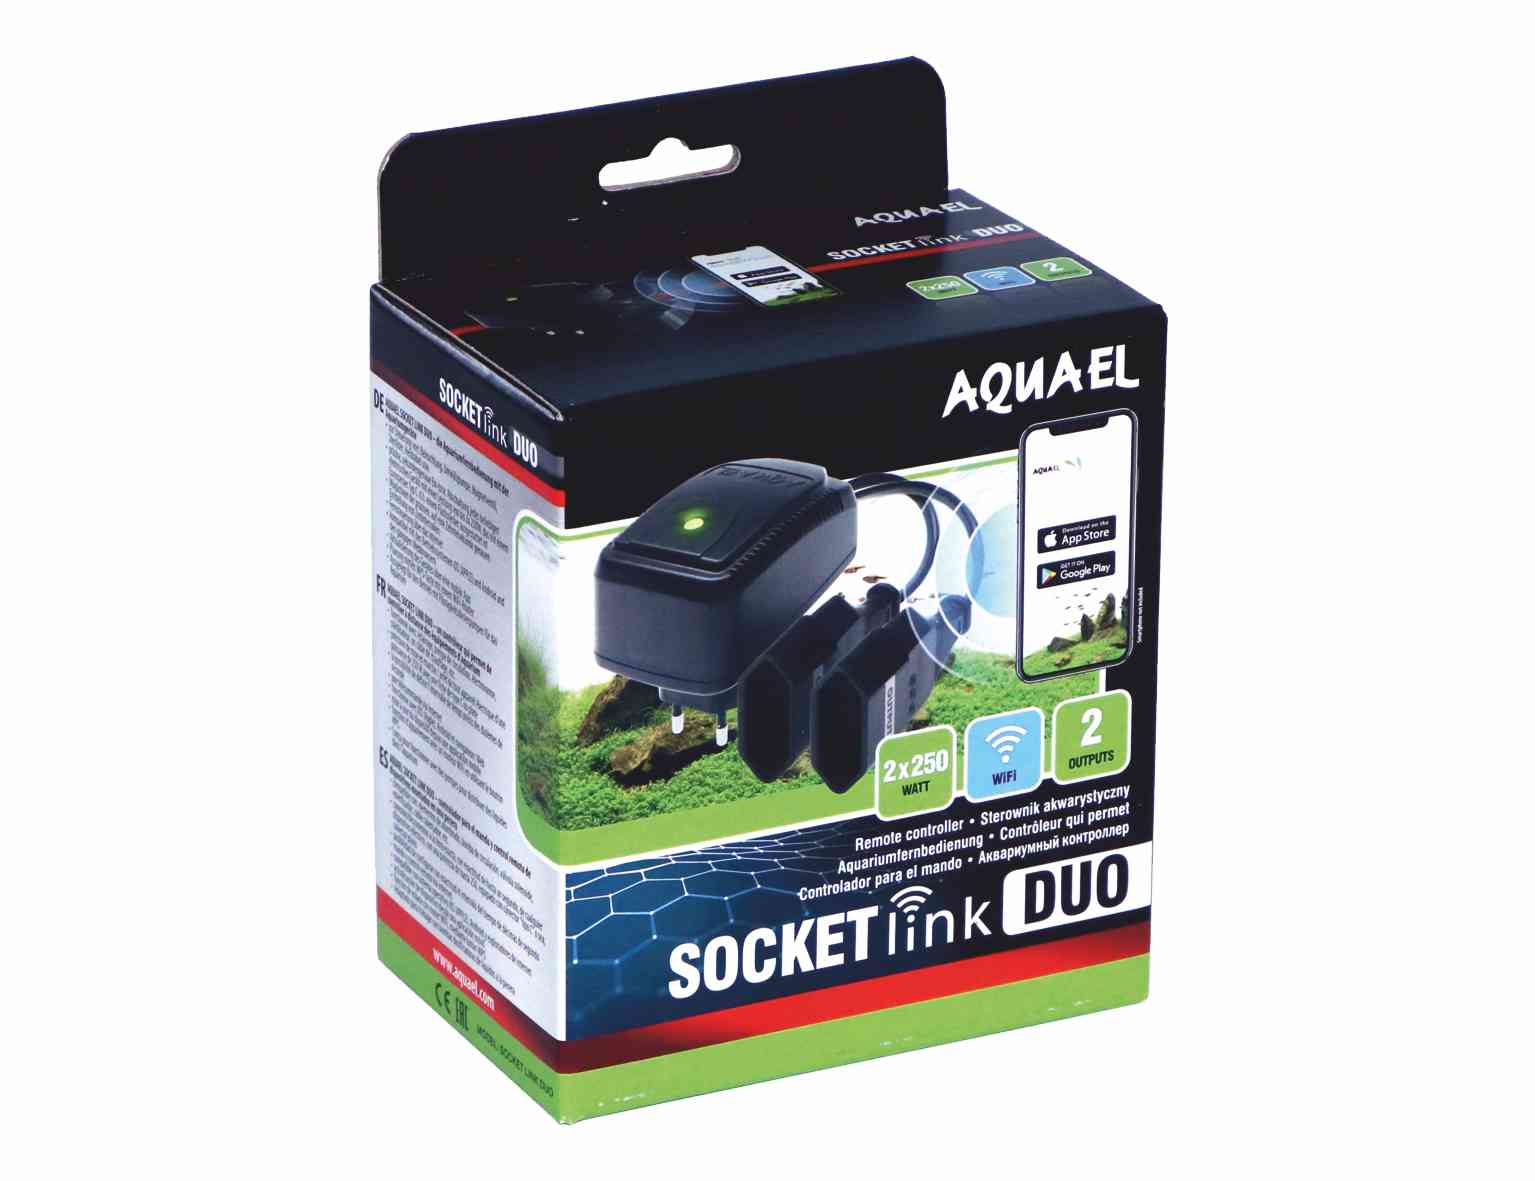 Aquael Socket Link DUO